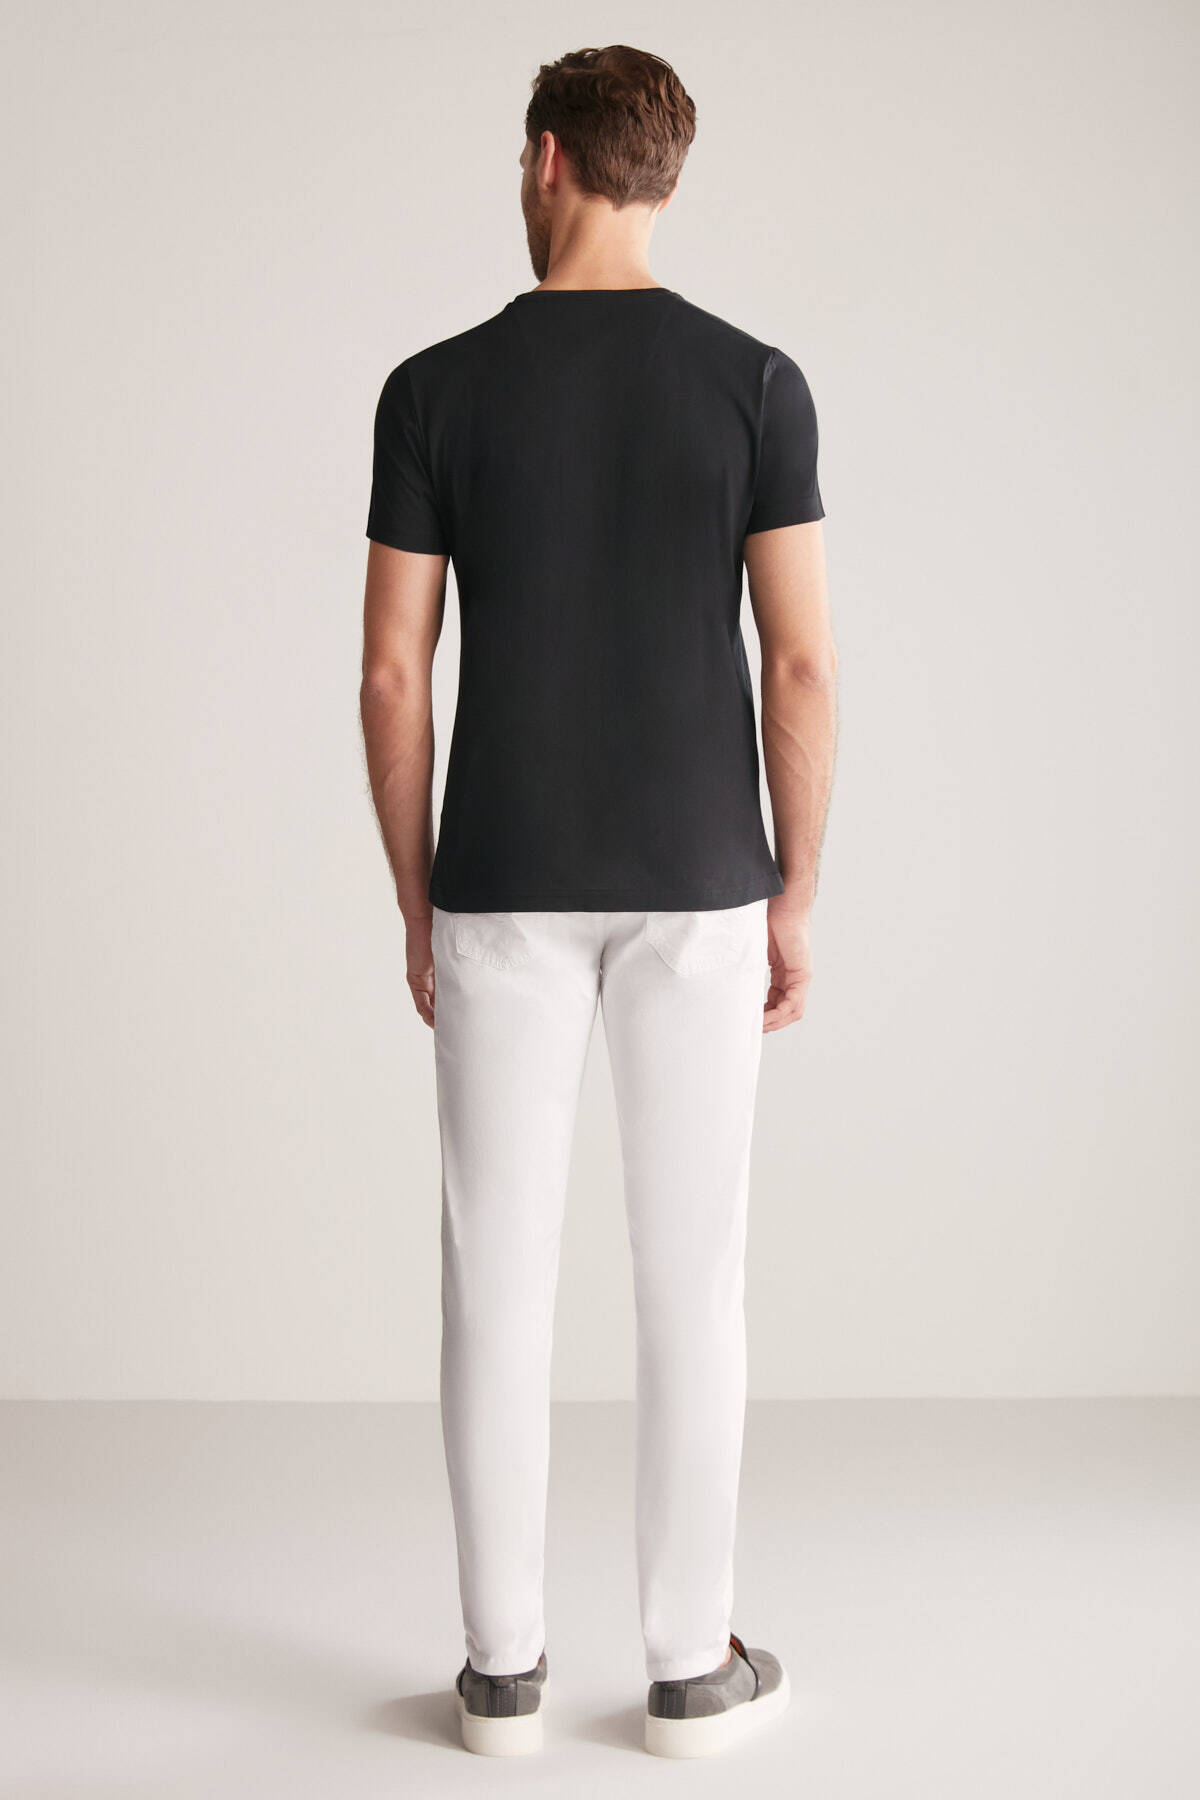 Hemington Kabartma Baskılı Siyah Pima Pamuk T-Shirt